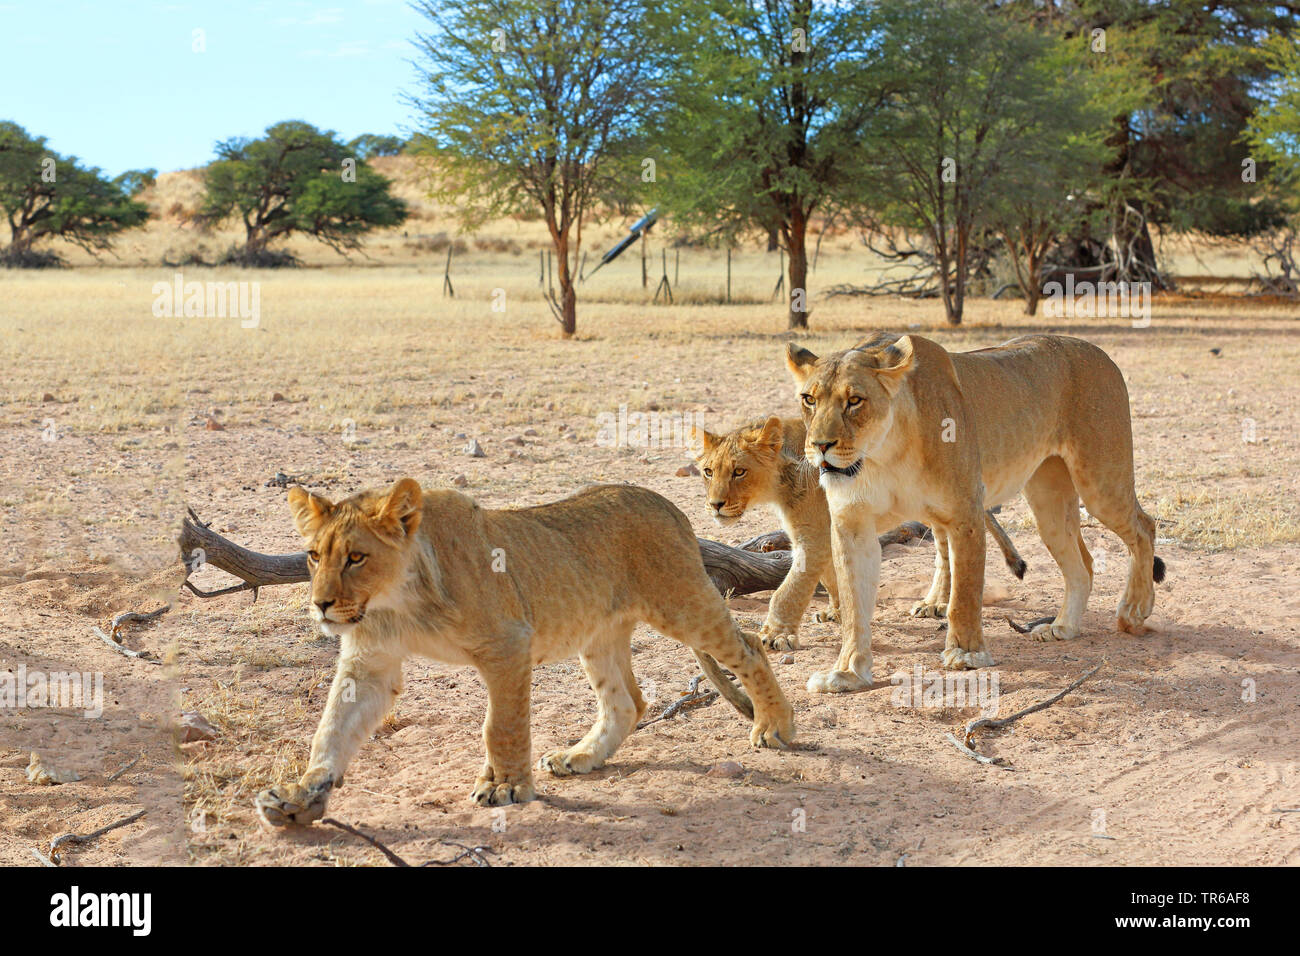 Lion (Panthera leo), leonessa a piedi con due giovani animali della savana, Sud Africa, Kgalagadi transfrontaliera Parco Nazionale Foto Stock